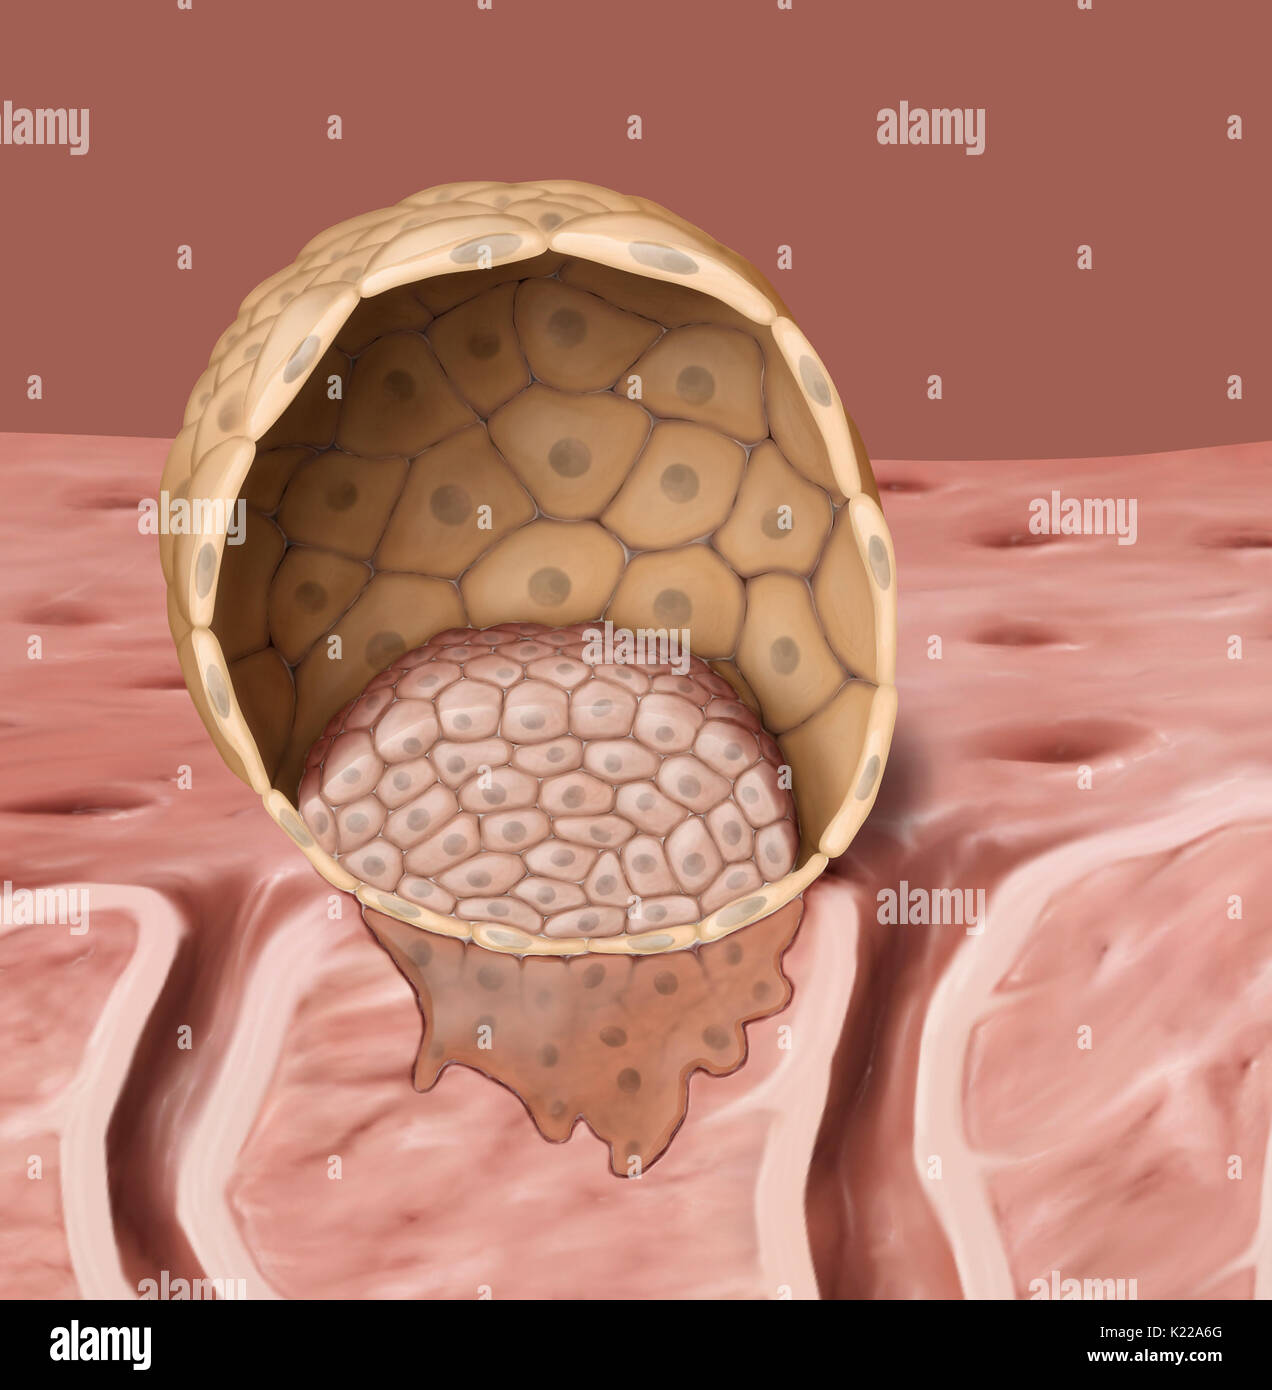 Un blastocyste est un embryon de 5 à 7 jours, suivant la fertilisation. Il se compose d'une cavité centrale et deux types distincts de cellules, le trophoblaste et le bouton embryonnaire. Banque D'Images